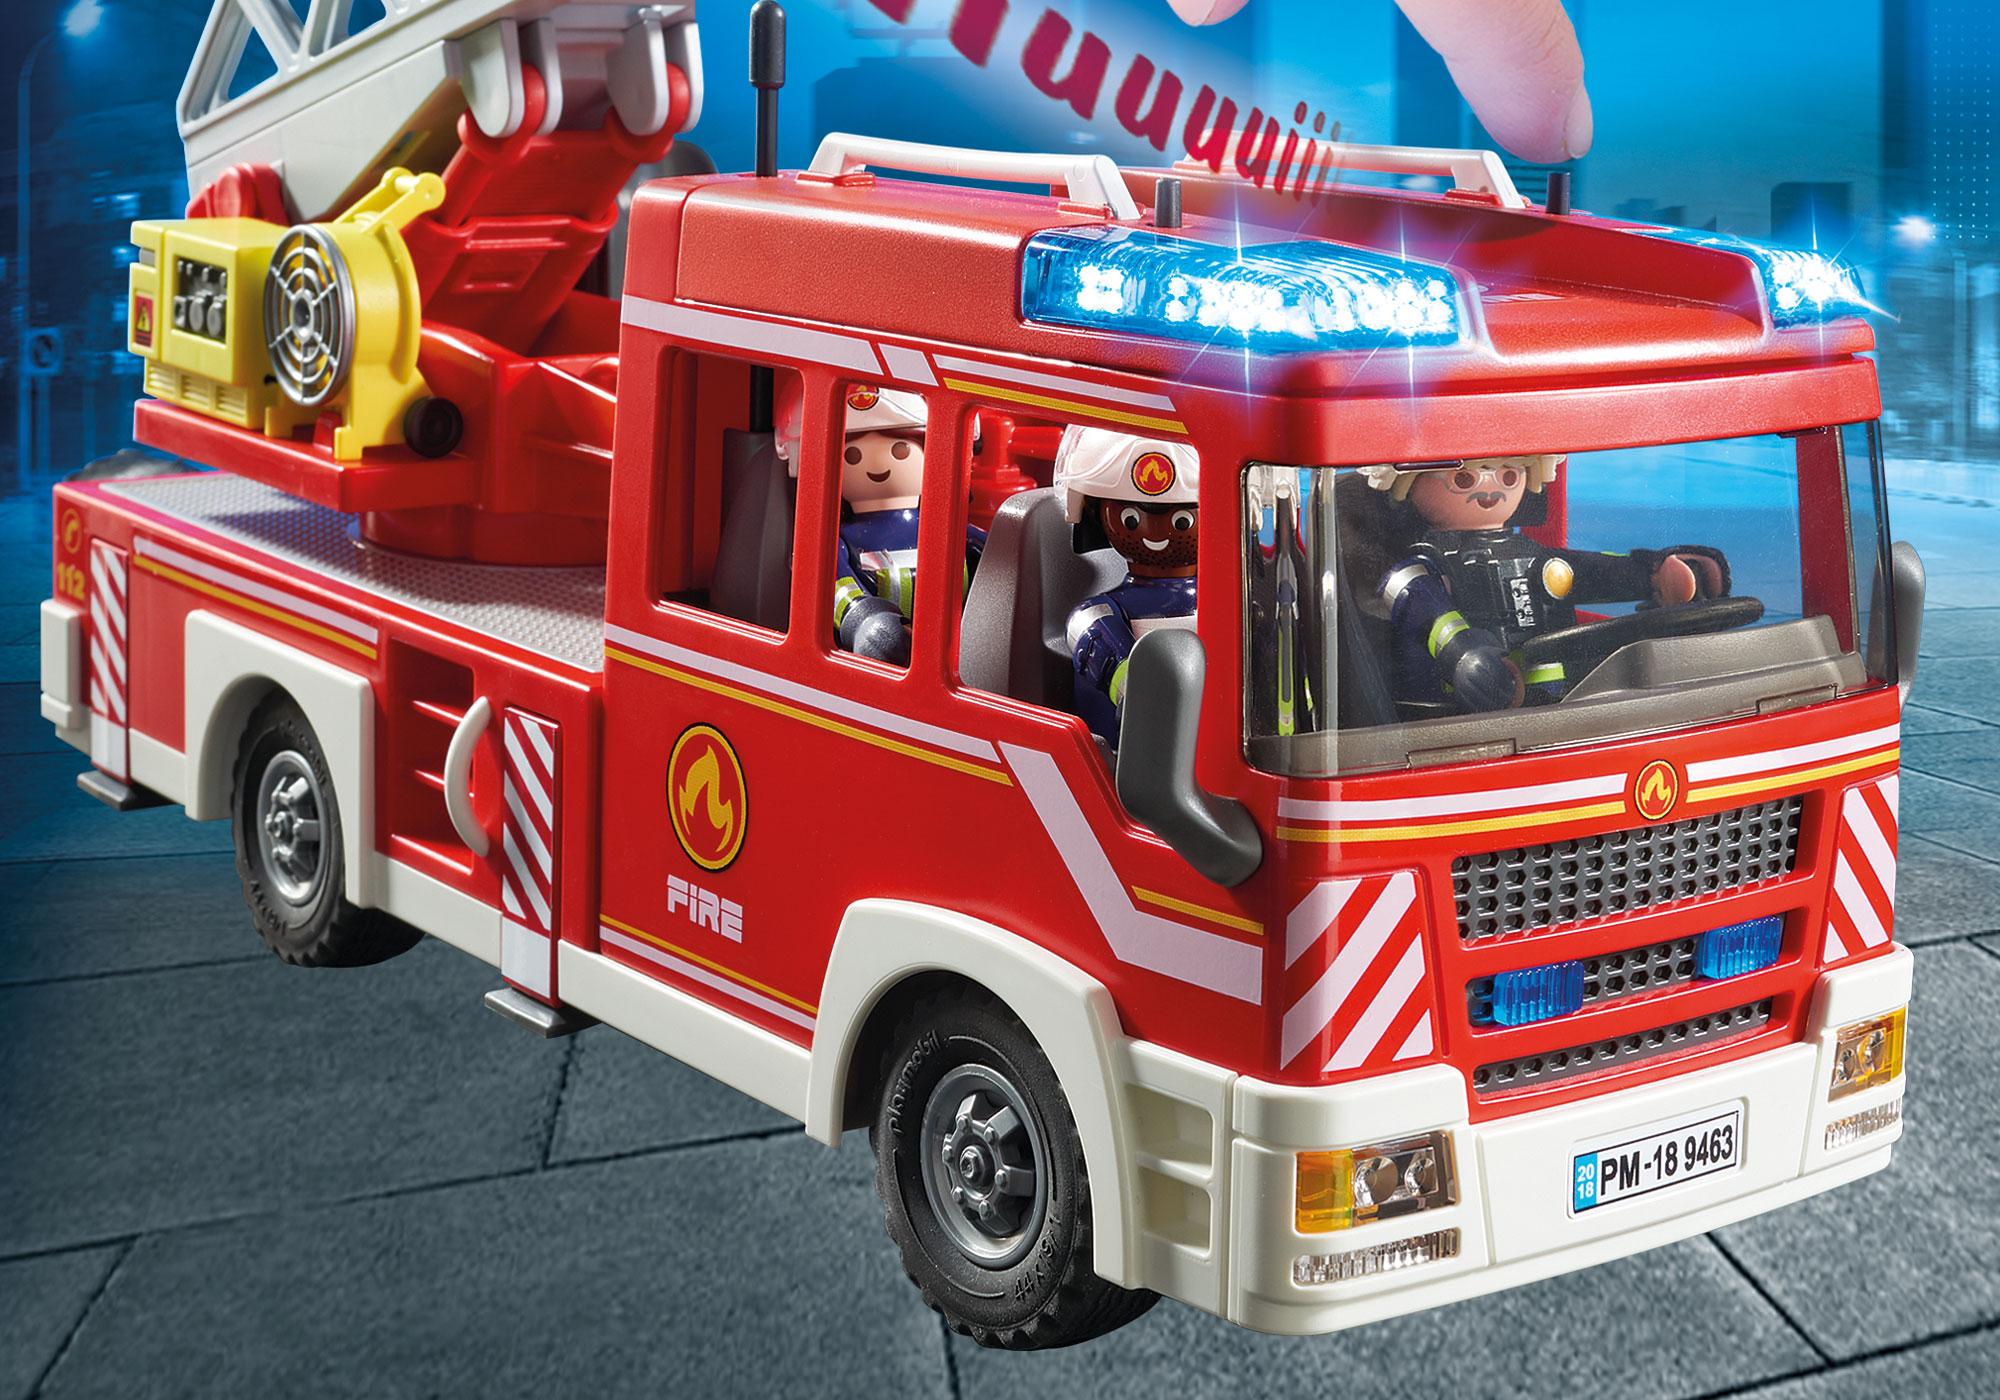 vidéos de pompiers playmobil